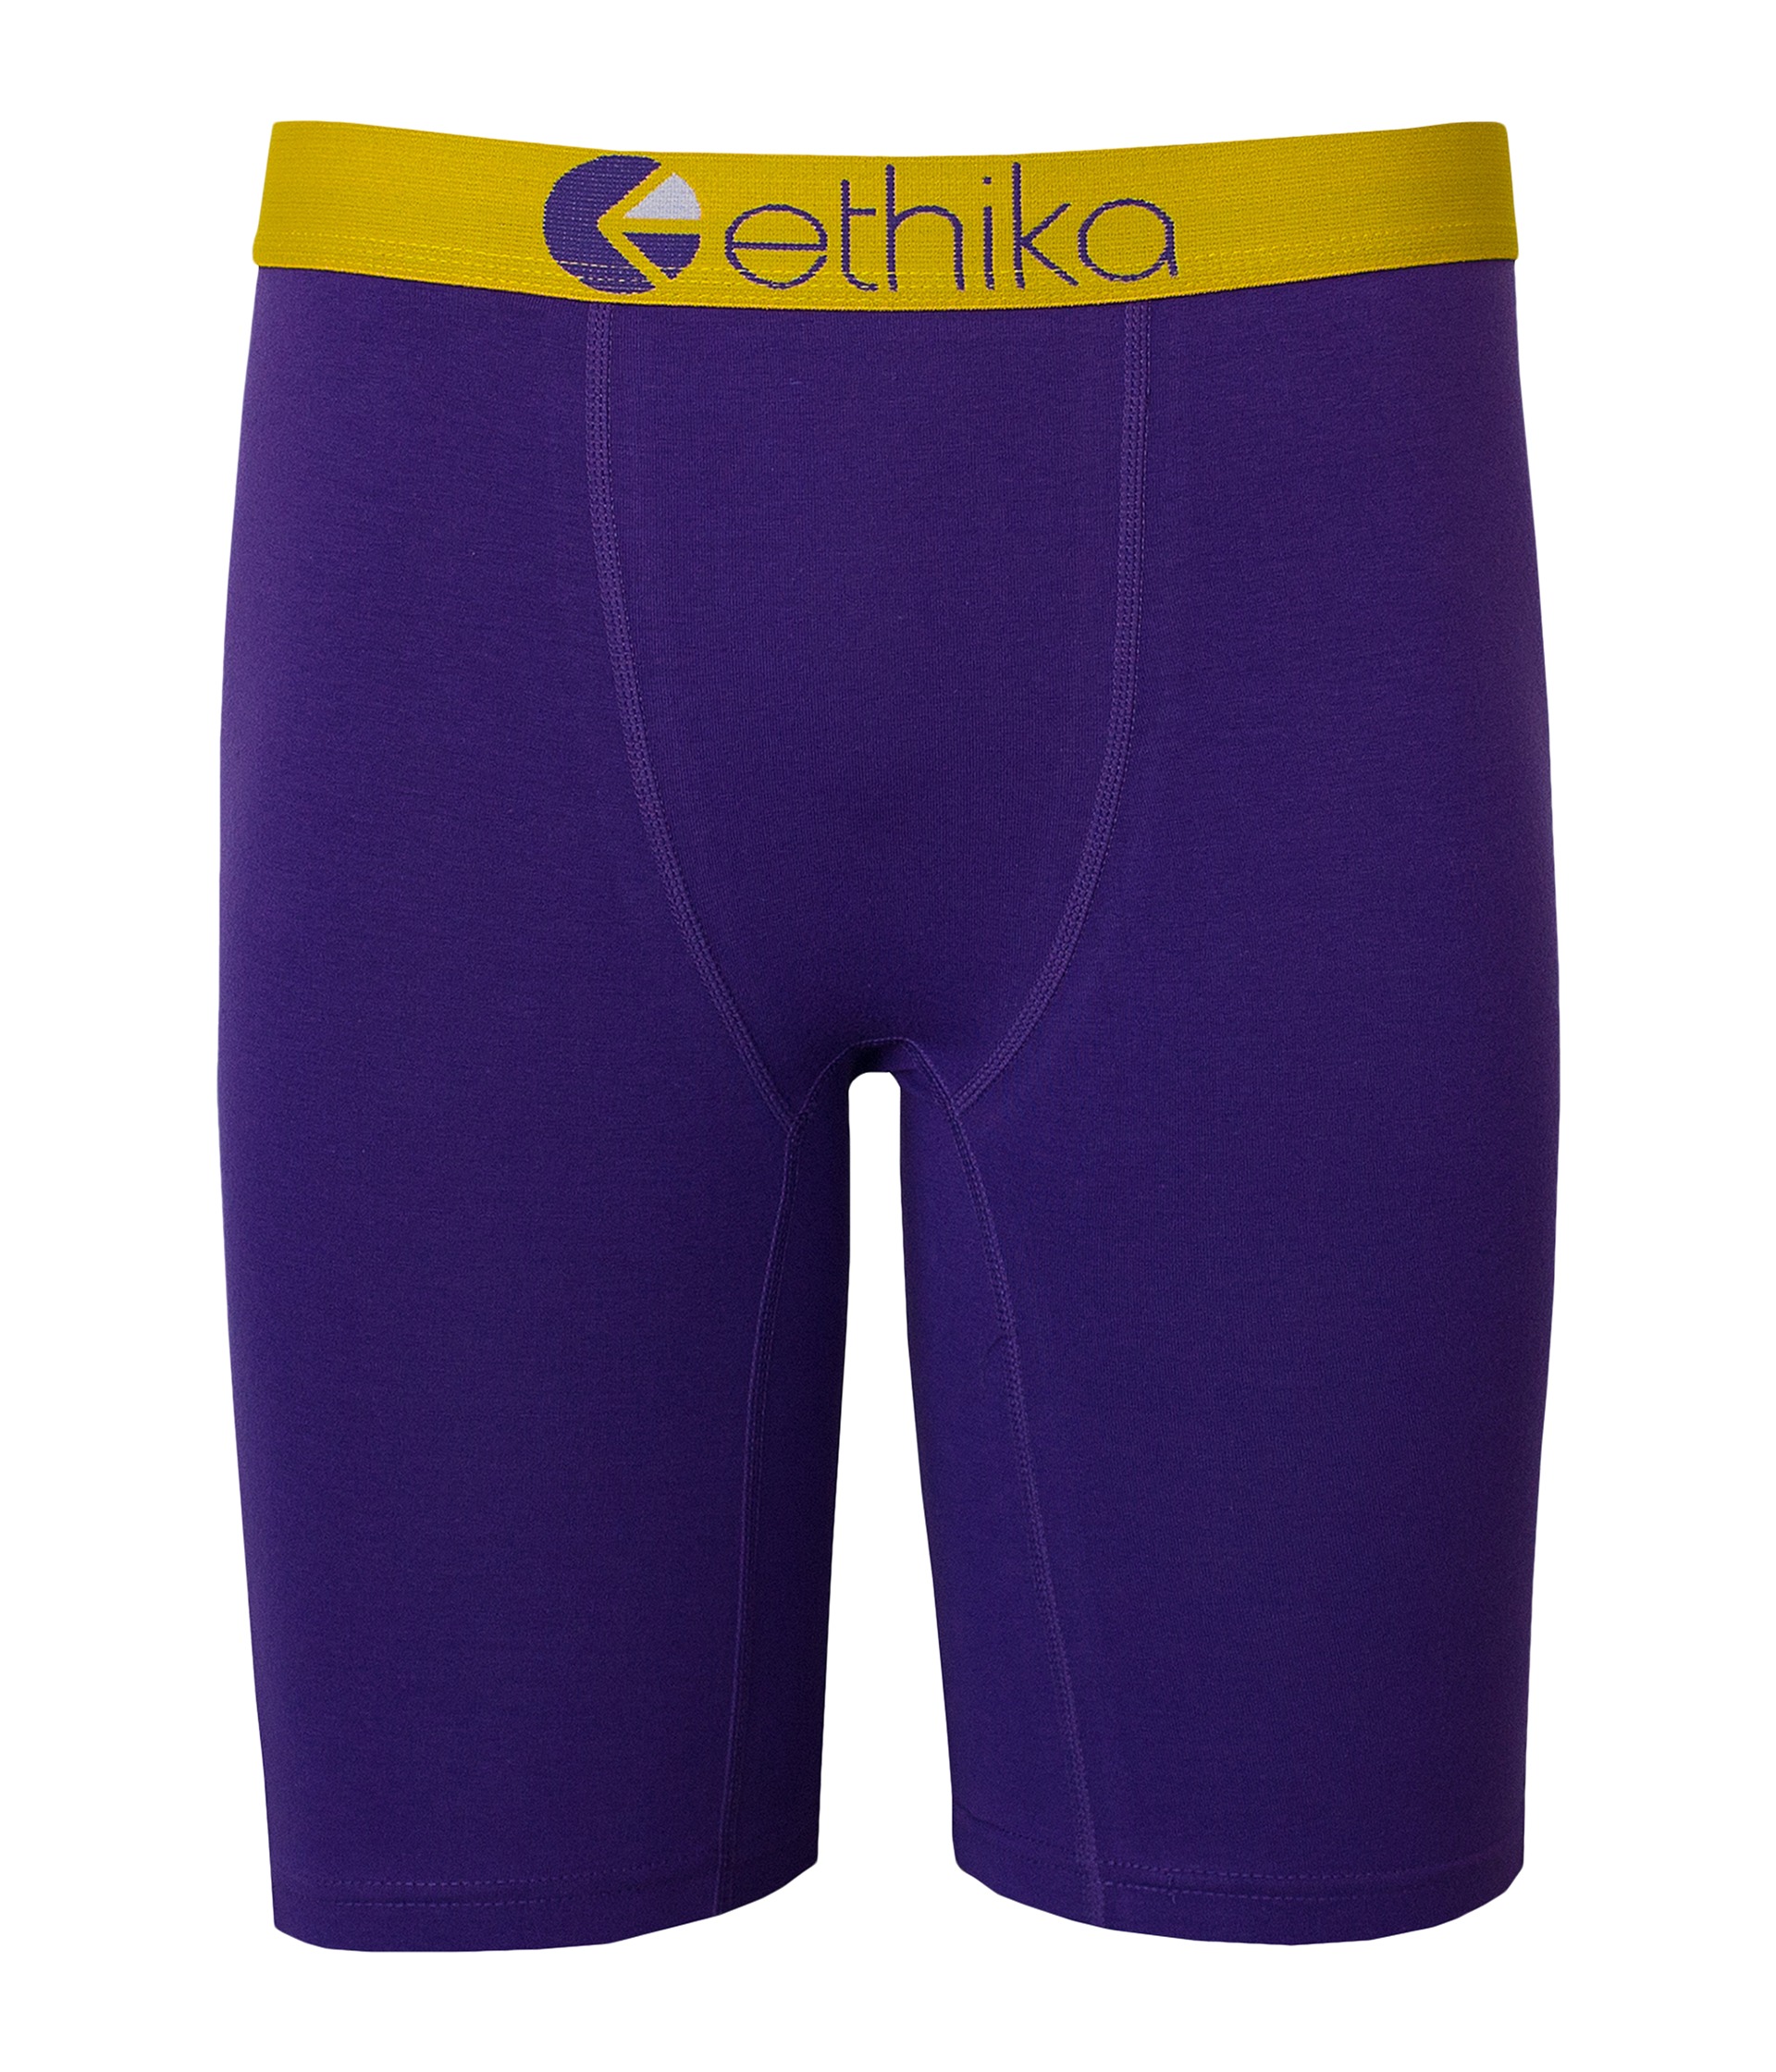 ethika The Staple - Lakeshow Boxer Brief Purple - Zappos.com Free ...